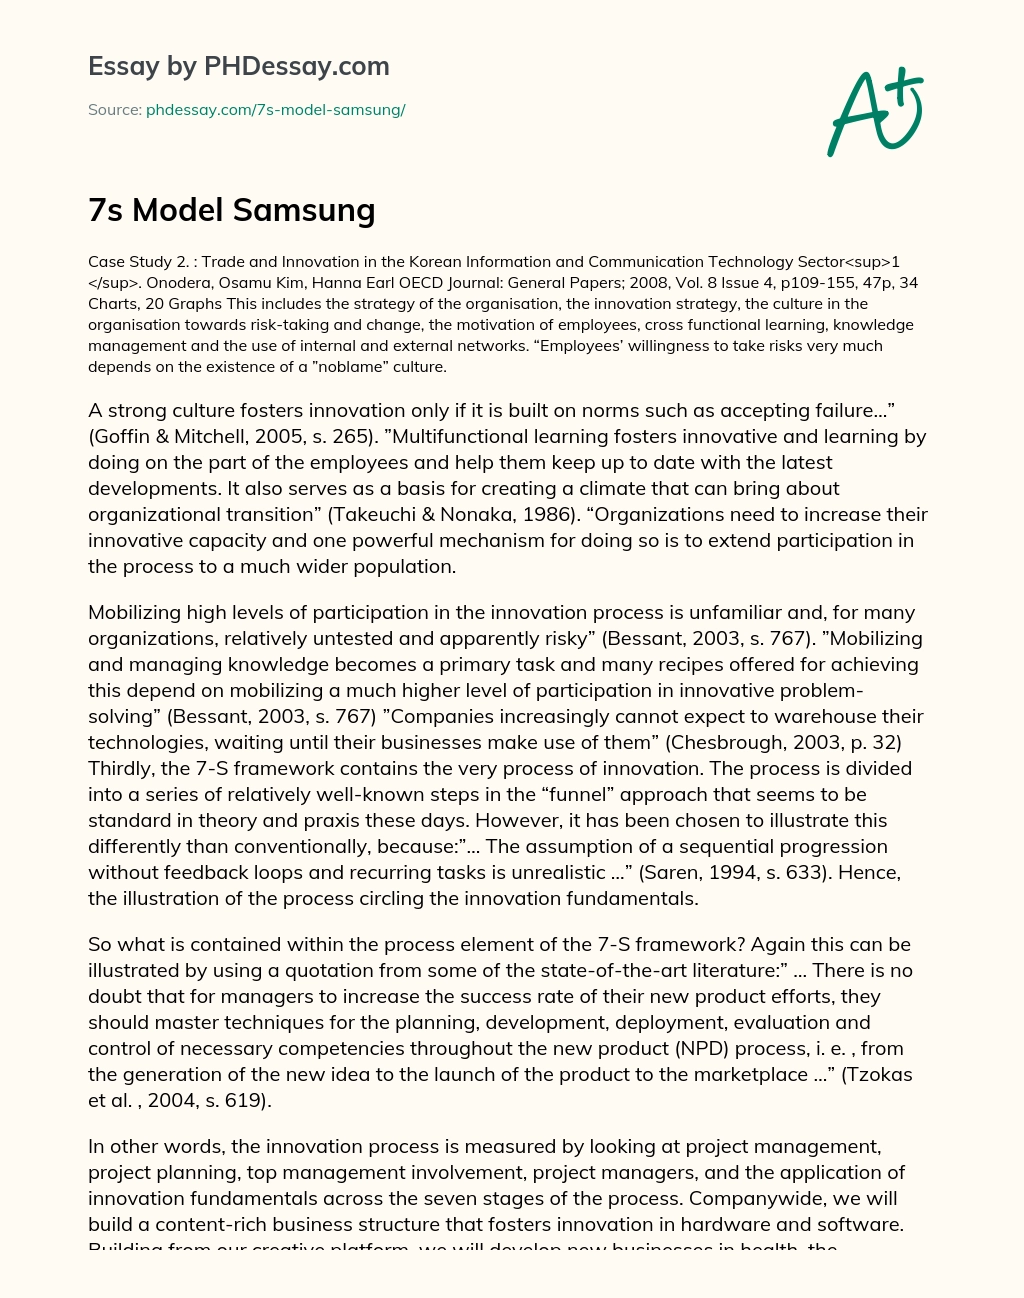 7s Model Samsung essay